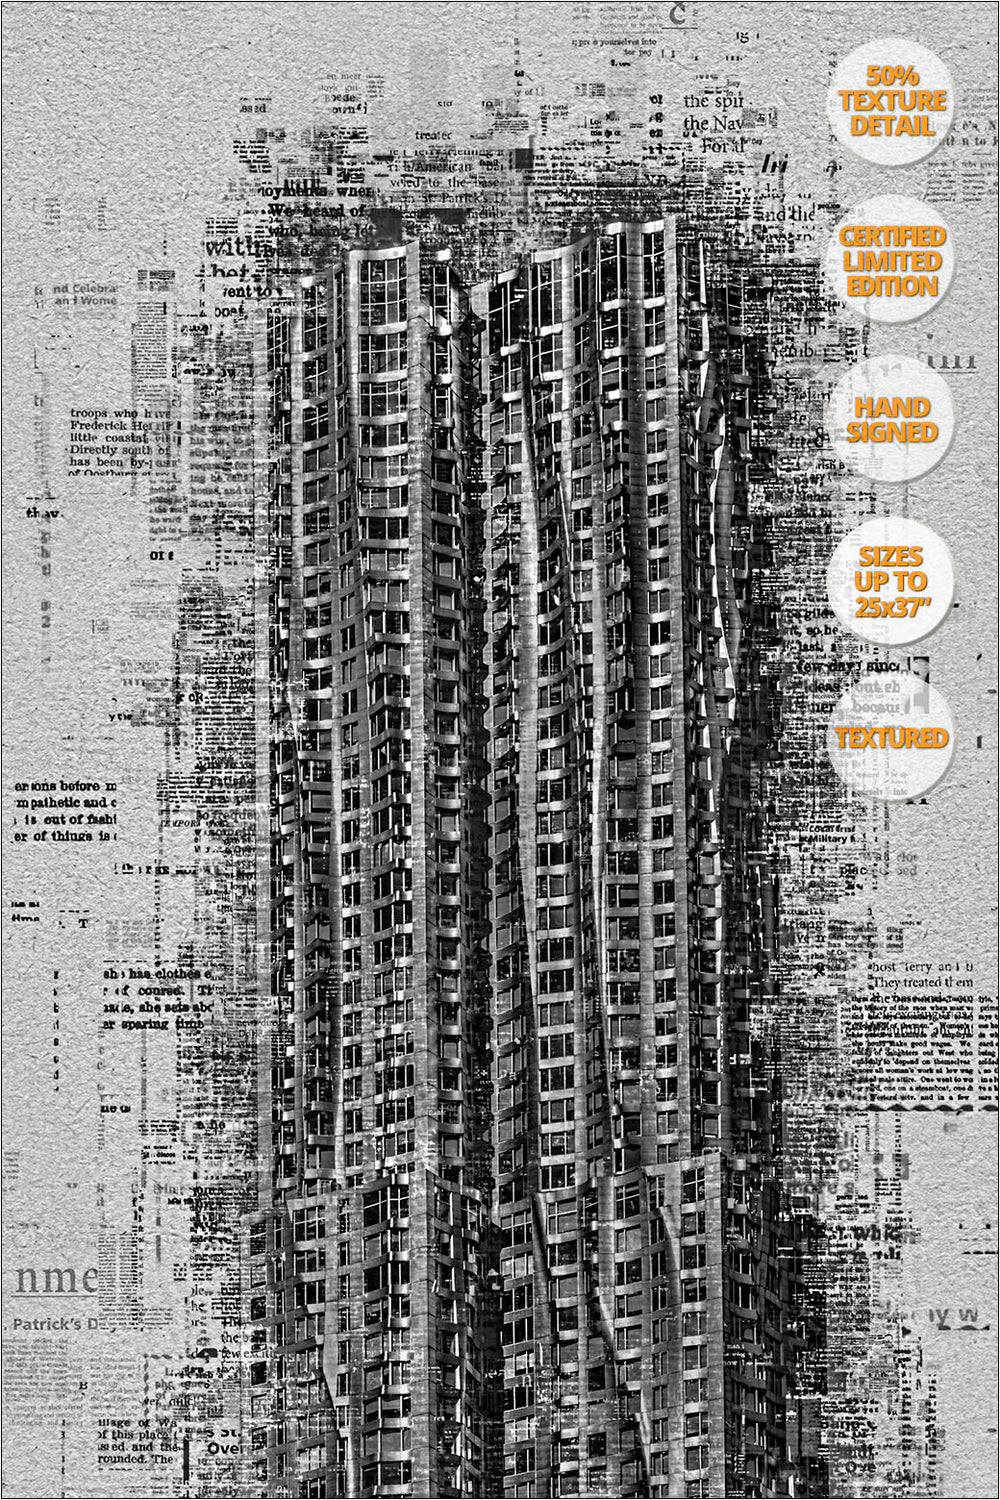 Beekman Tower, Manhattan, New York. | Already Written Series. | 50% Detail.